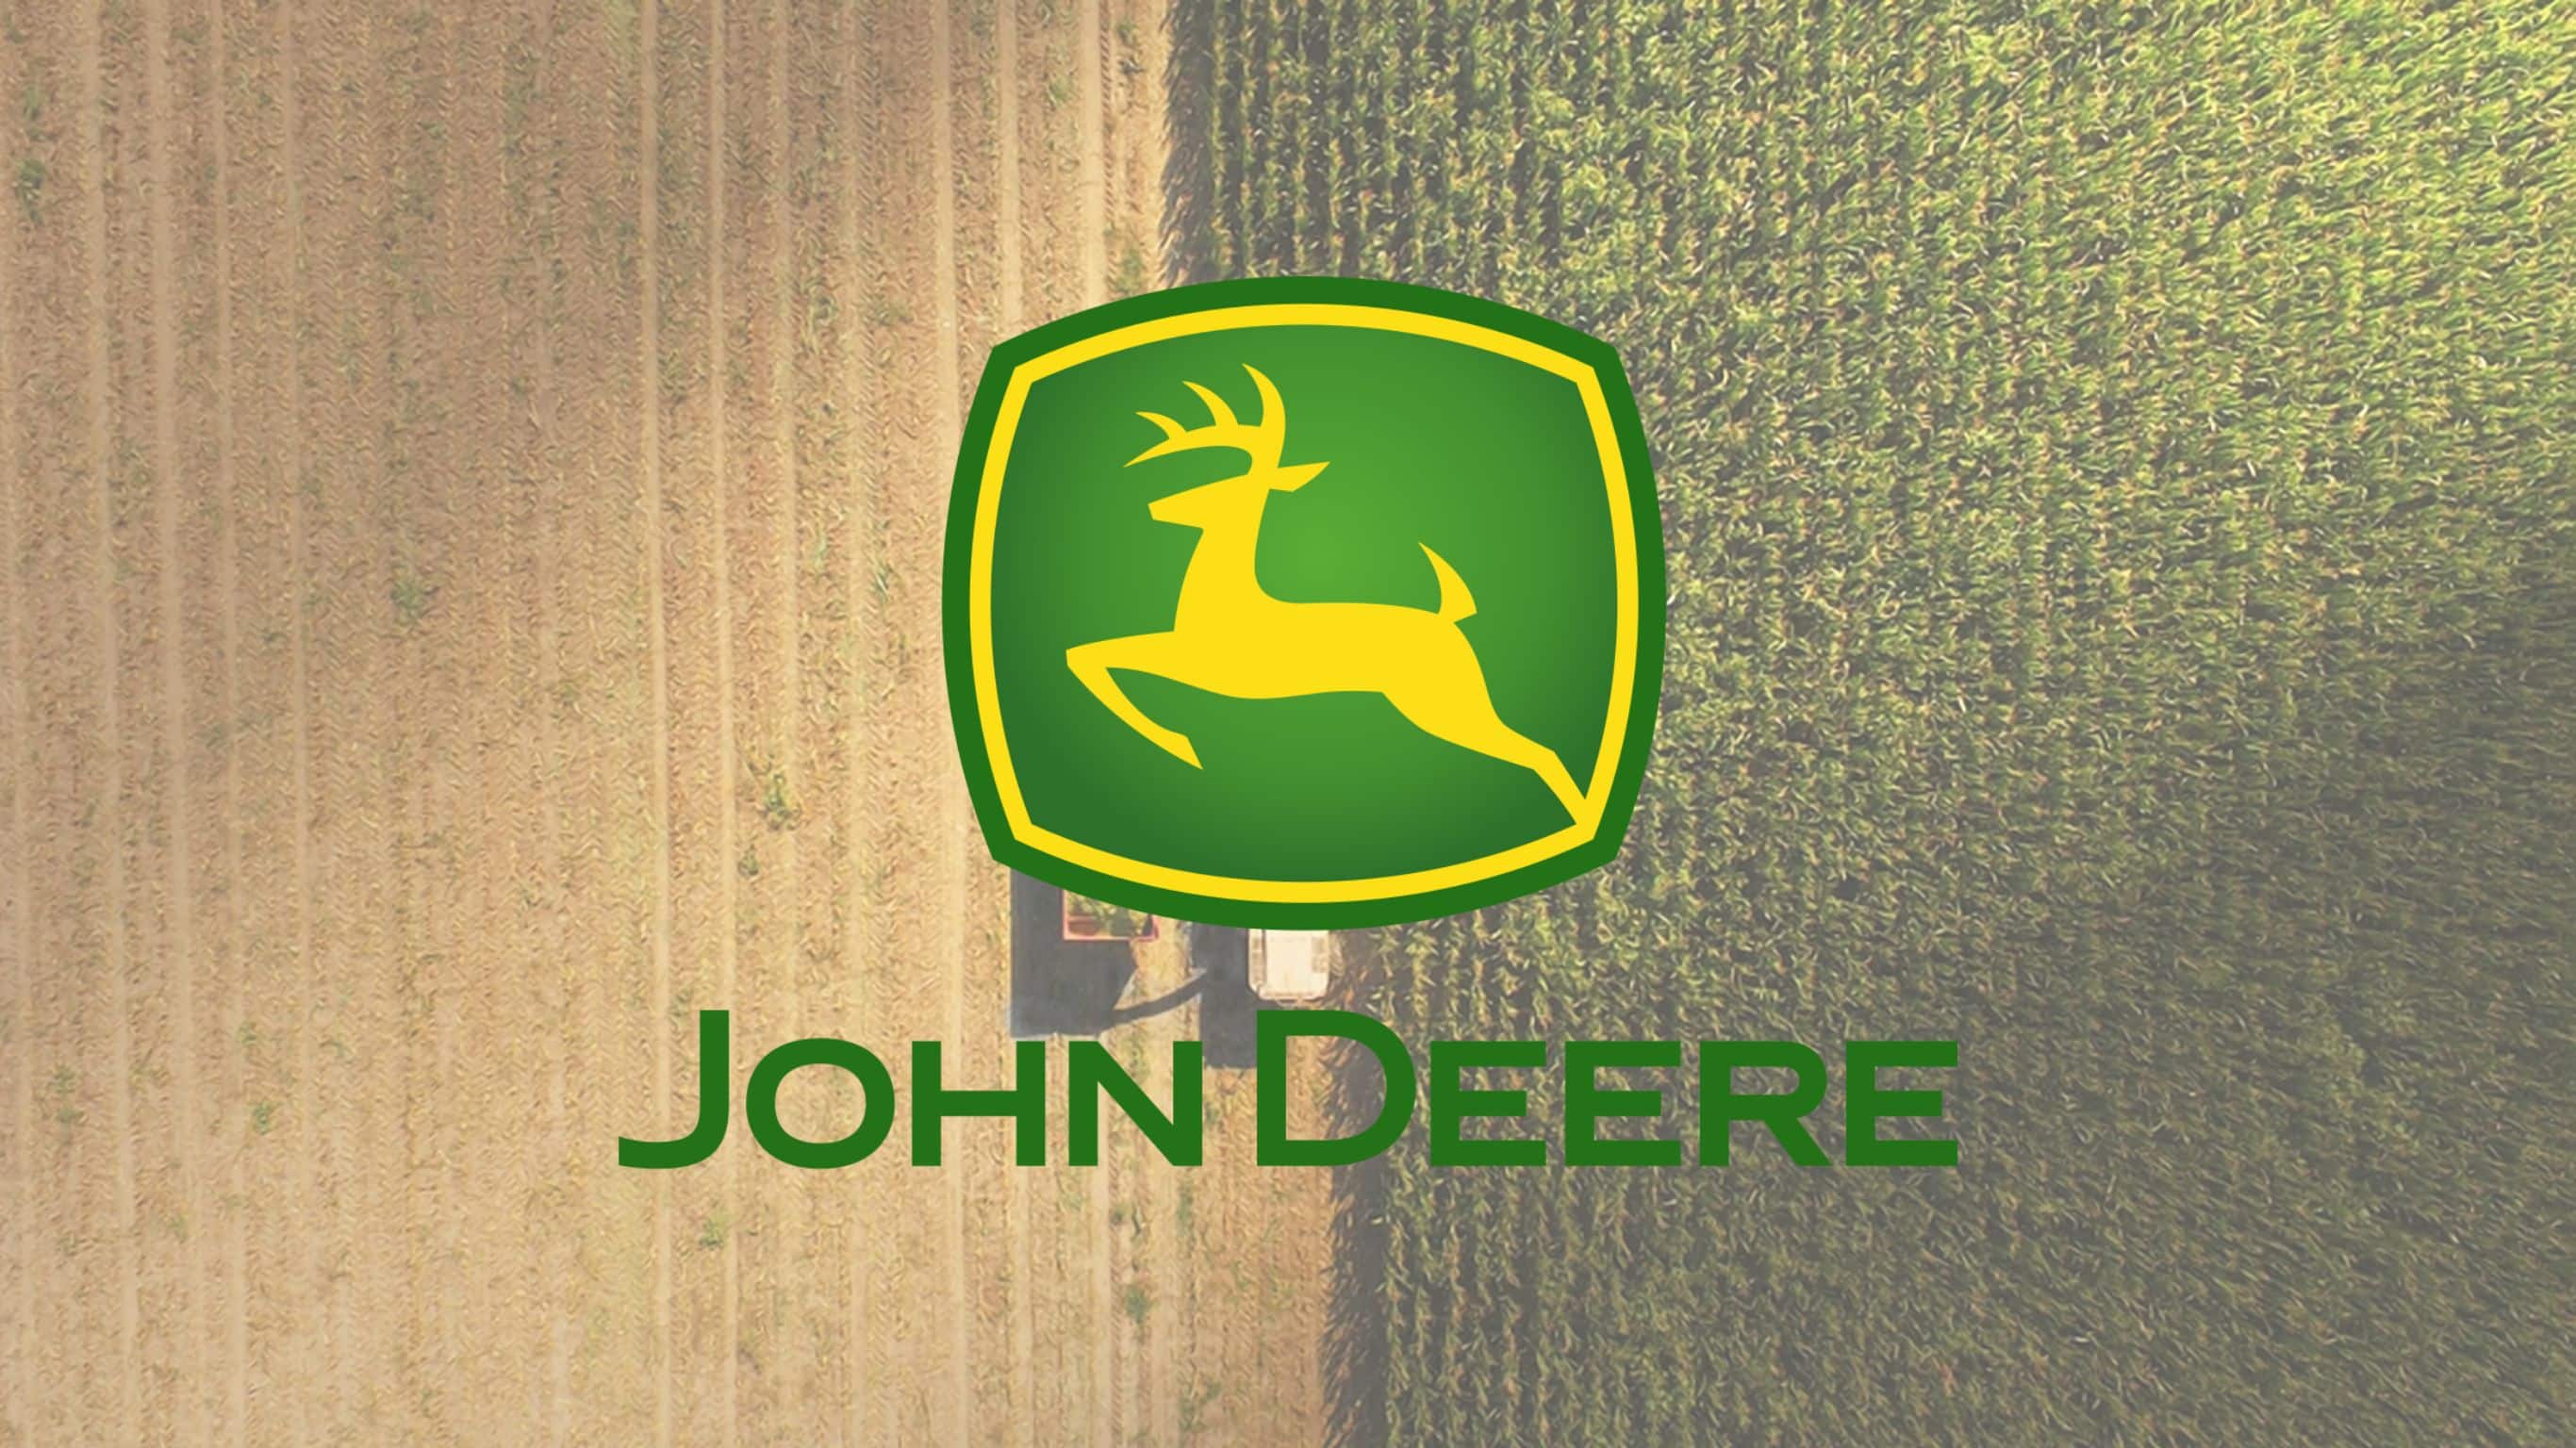 John Deere Latest News: Announces New Senior VP & Chief Legal Officer